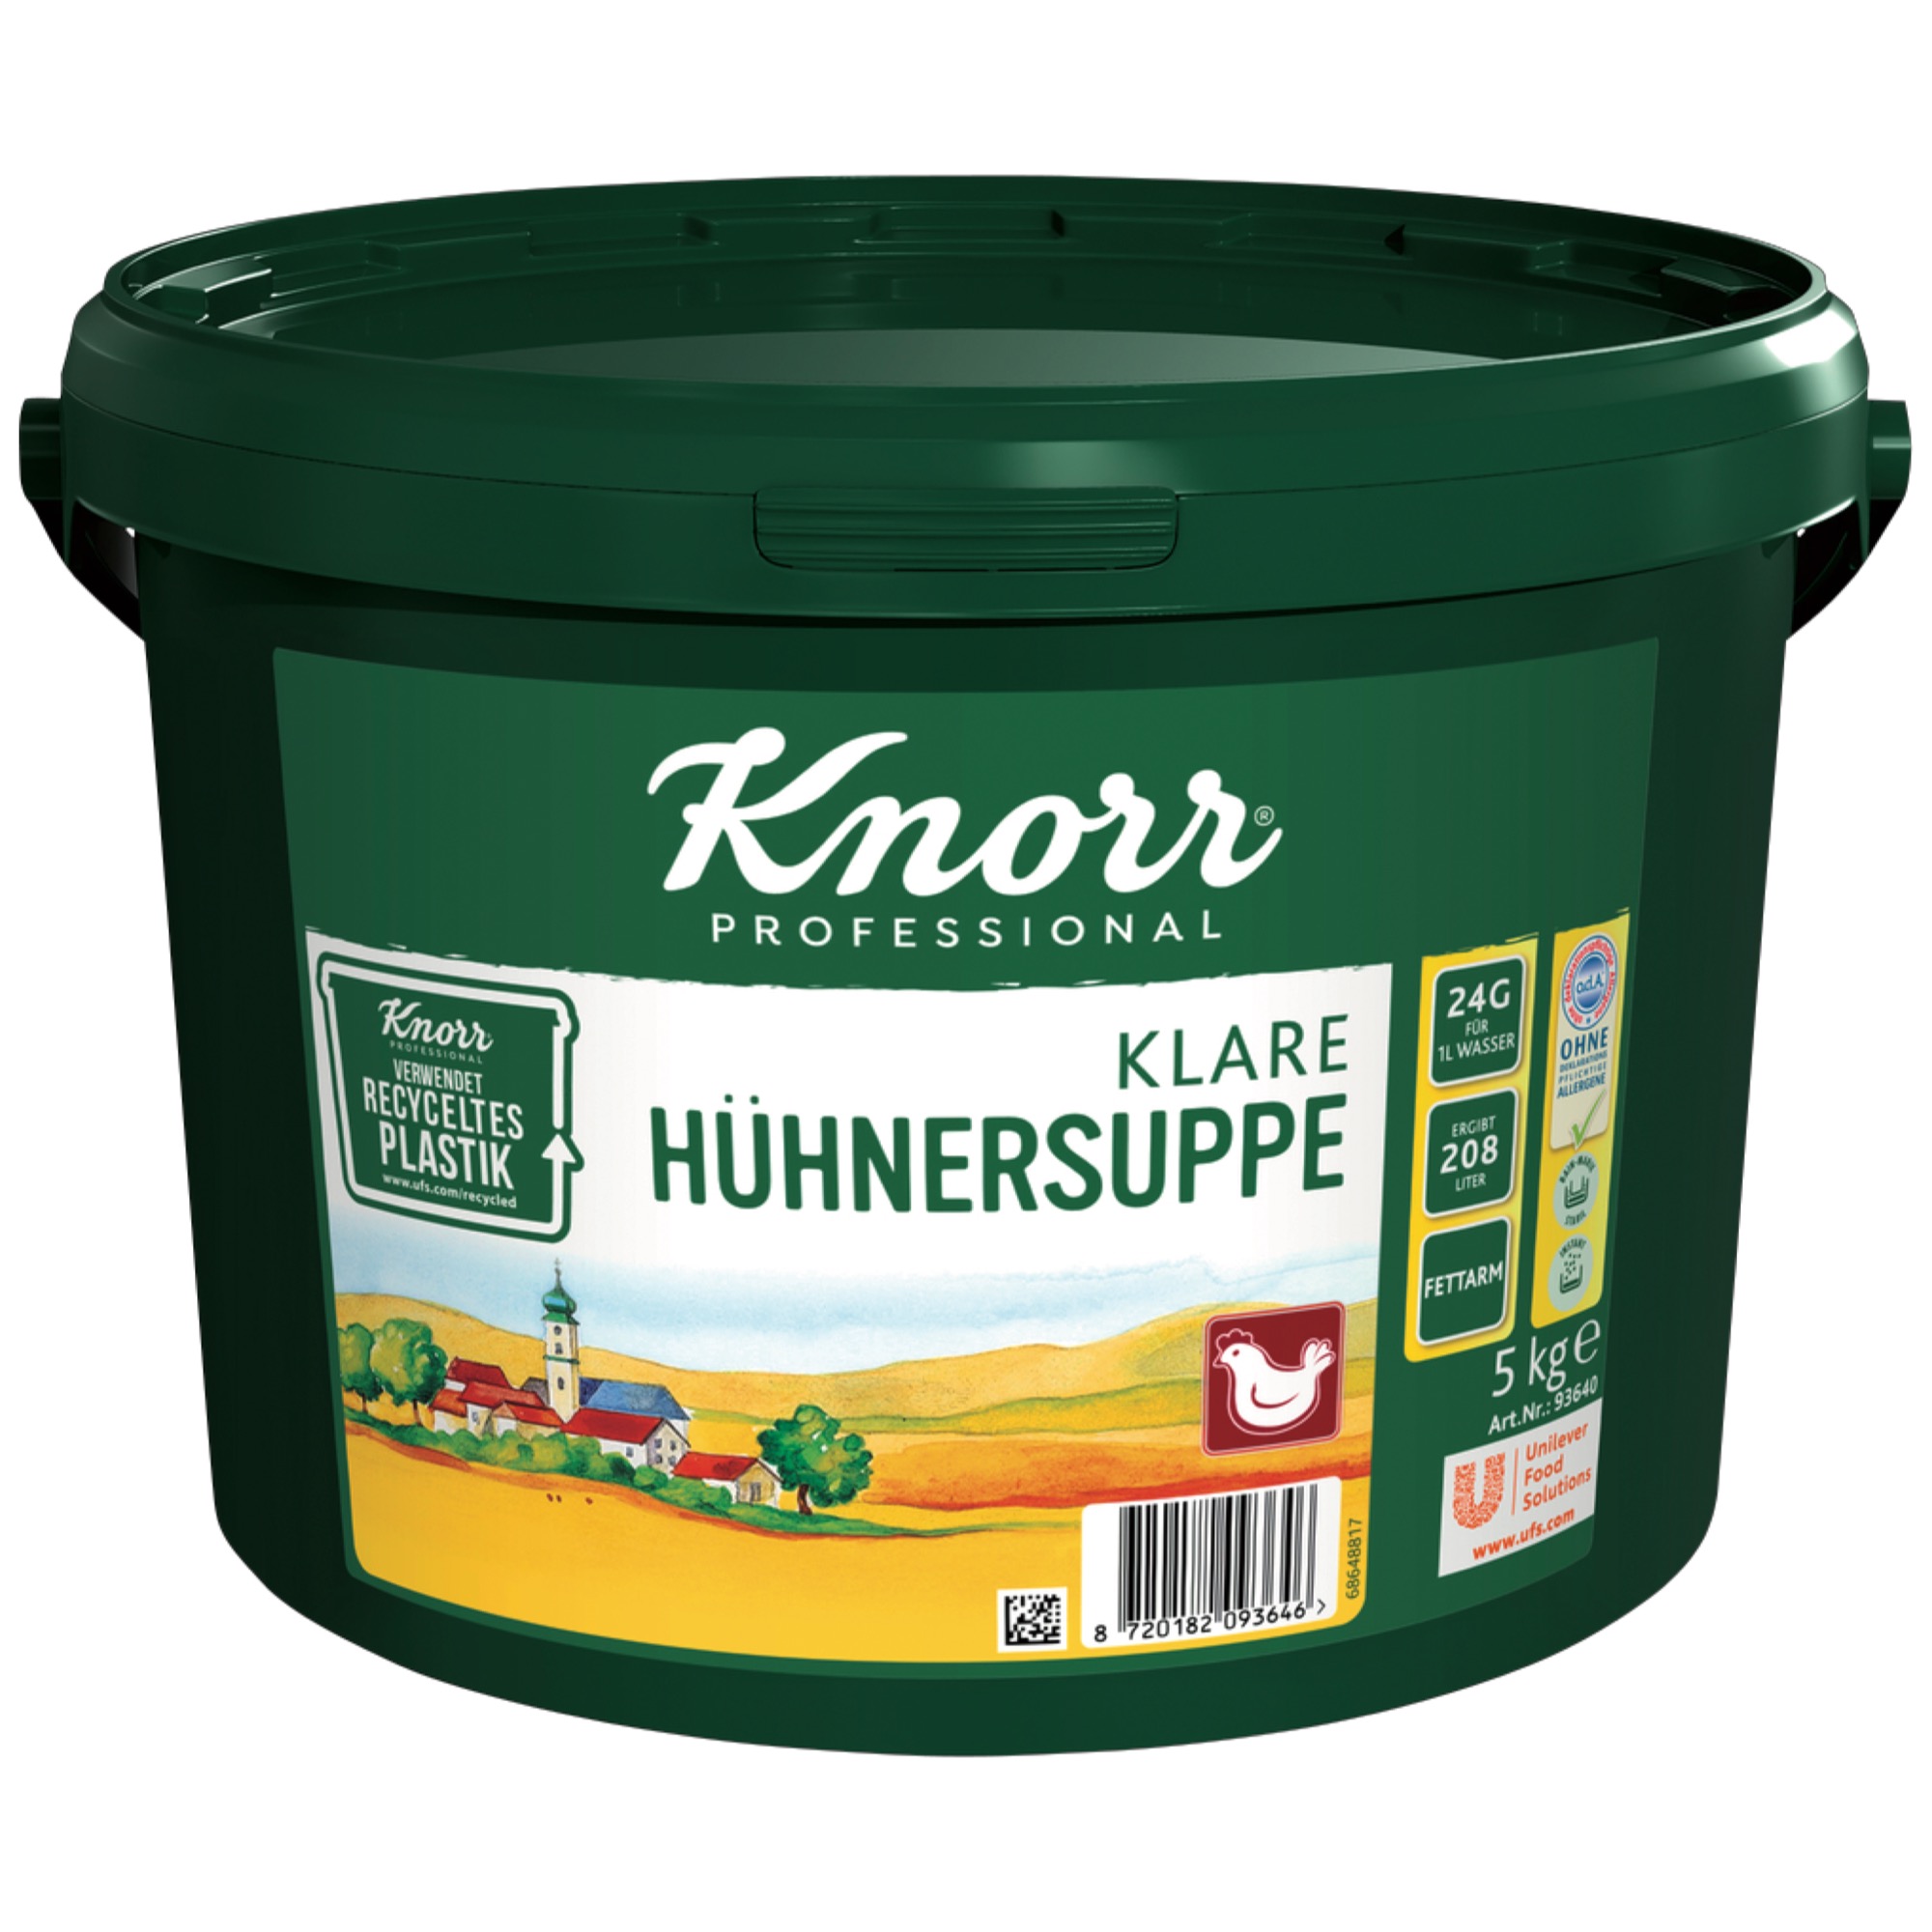 Knorr slepačia polievka číra 5kg